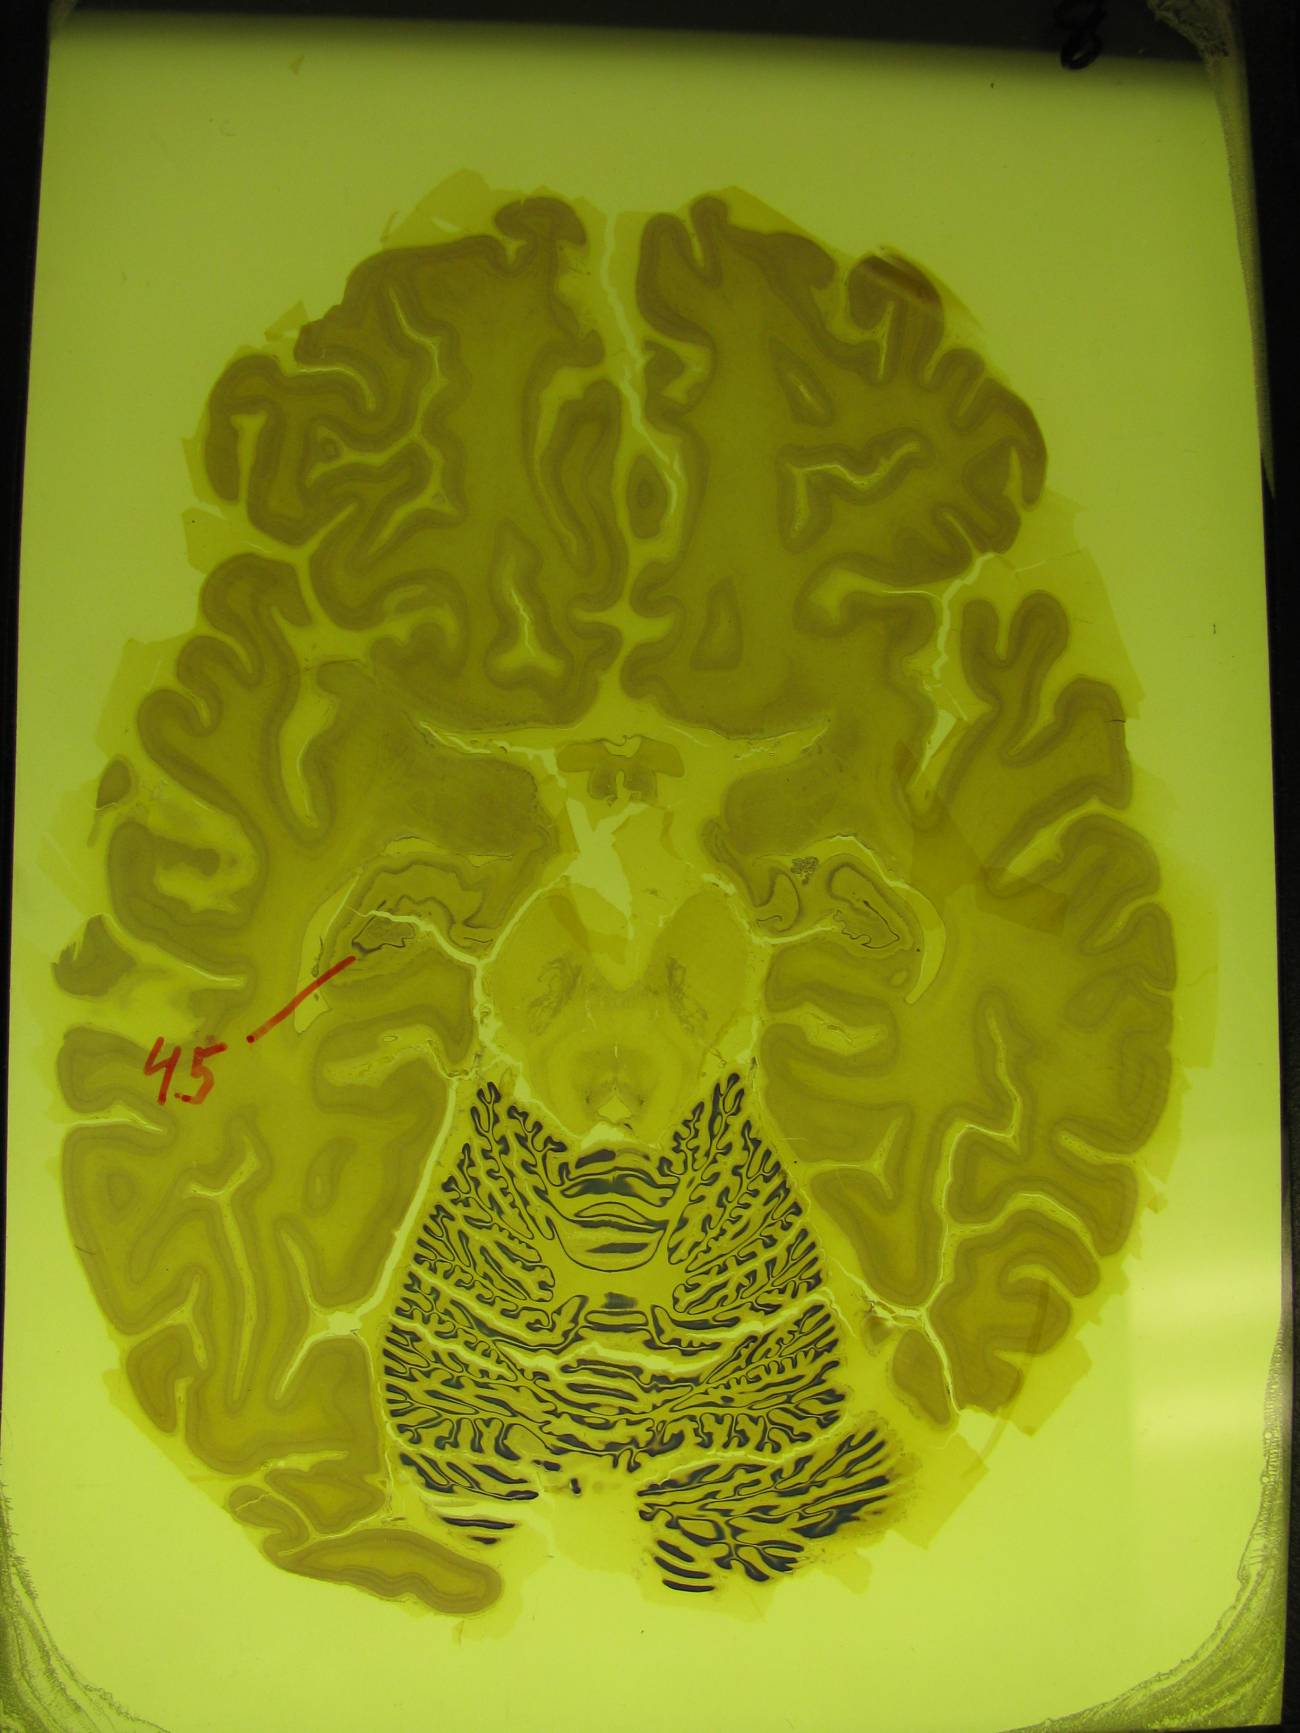 Una reducción del hipocampo en el cerebro precede al mal de Alzheimer